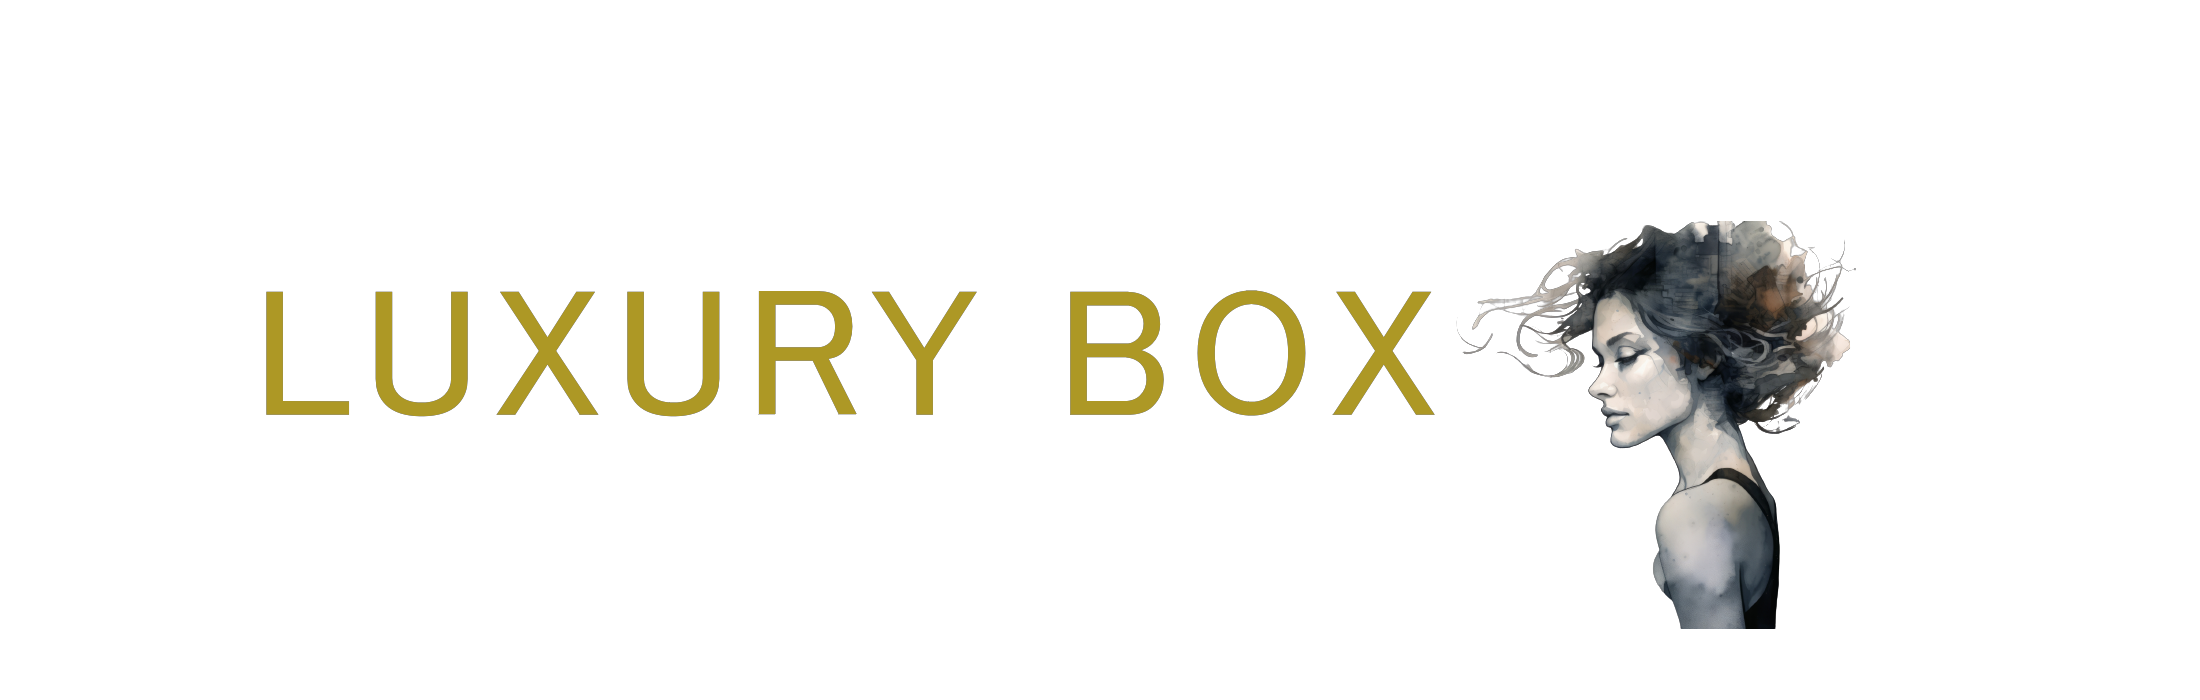 LUXURY BOX：世界の高級ブランドを探求